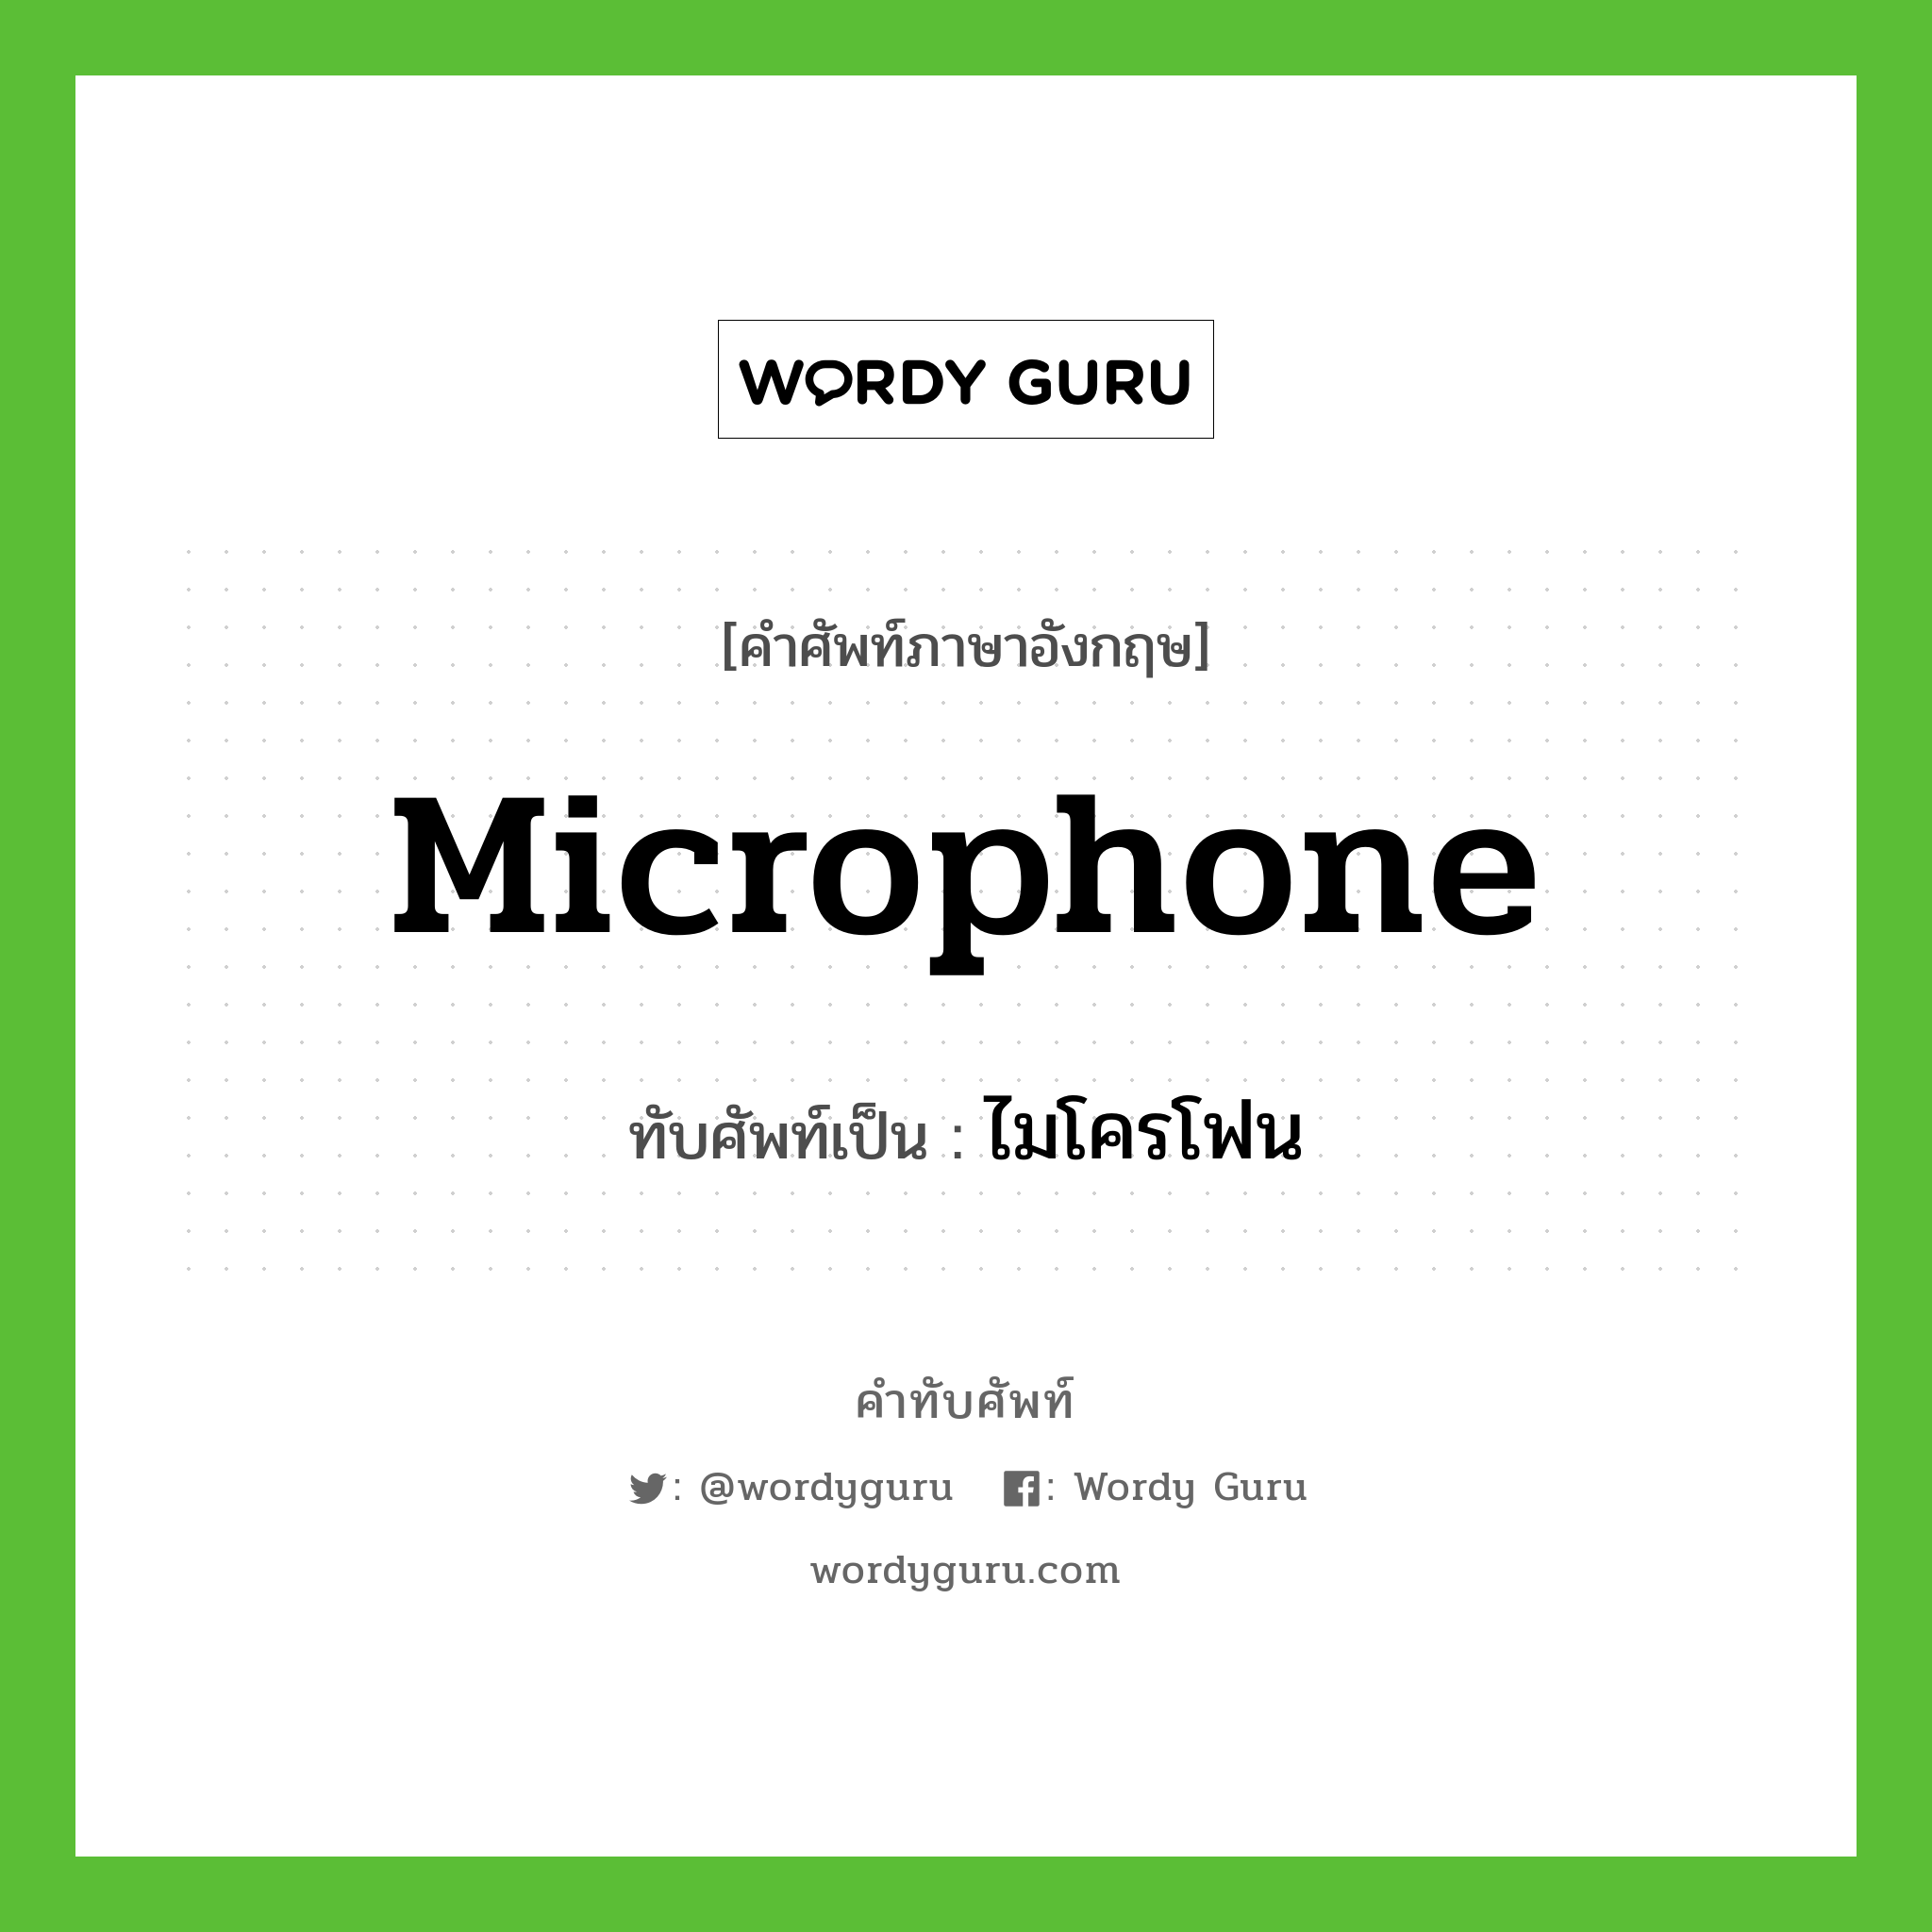 microphone เขียนเป็นคำไทยว่าอะไร?, คำศัพท์ภาษาอังกฤษ microphone ทับศัพท์เป็น ไมโครโฟน